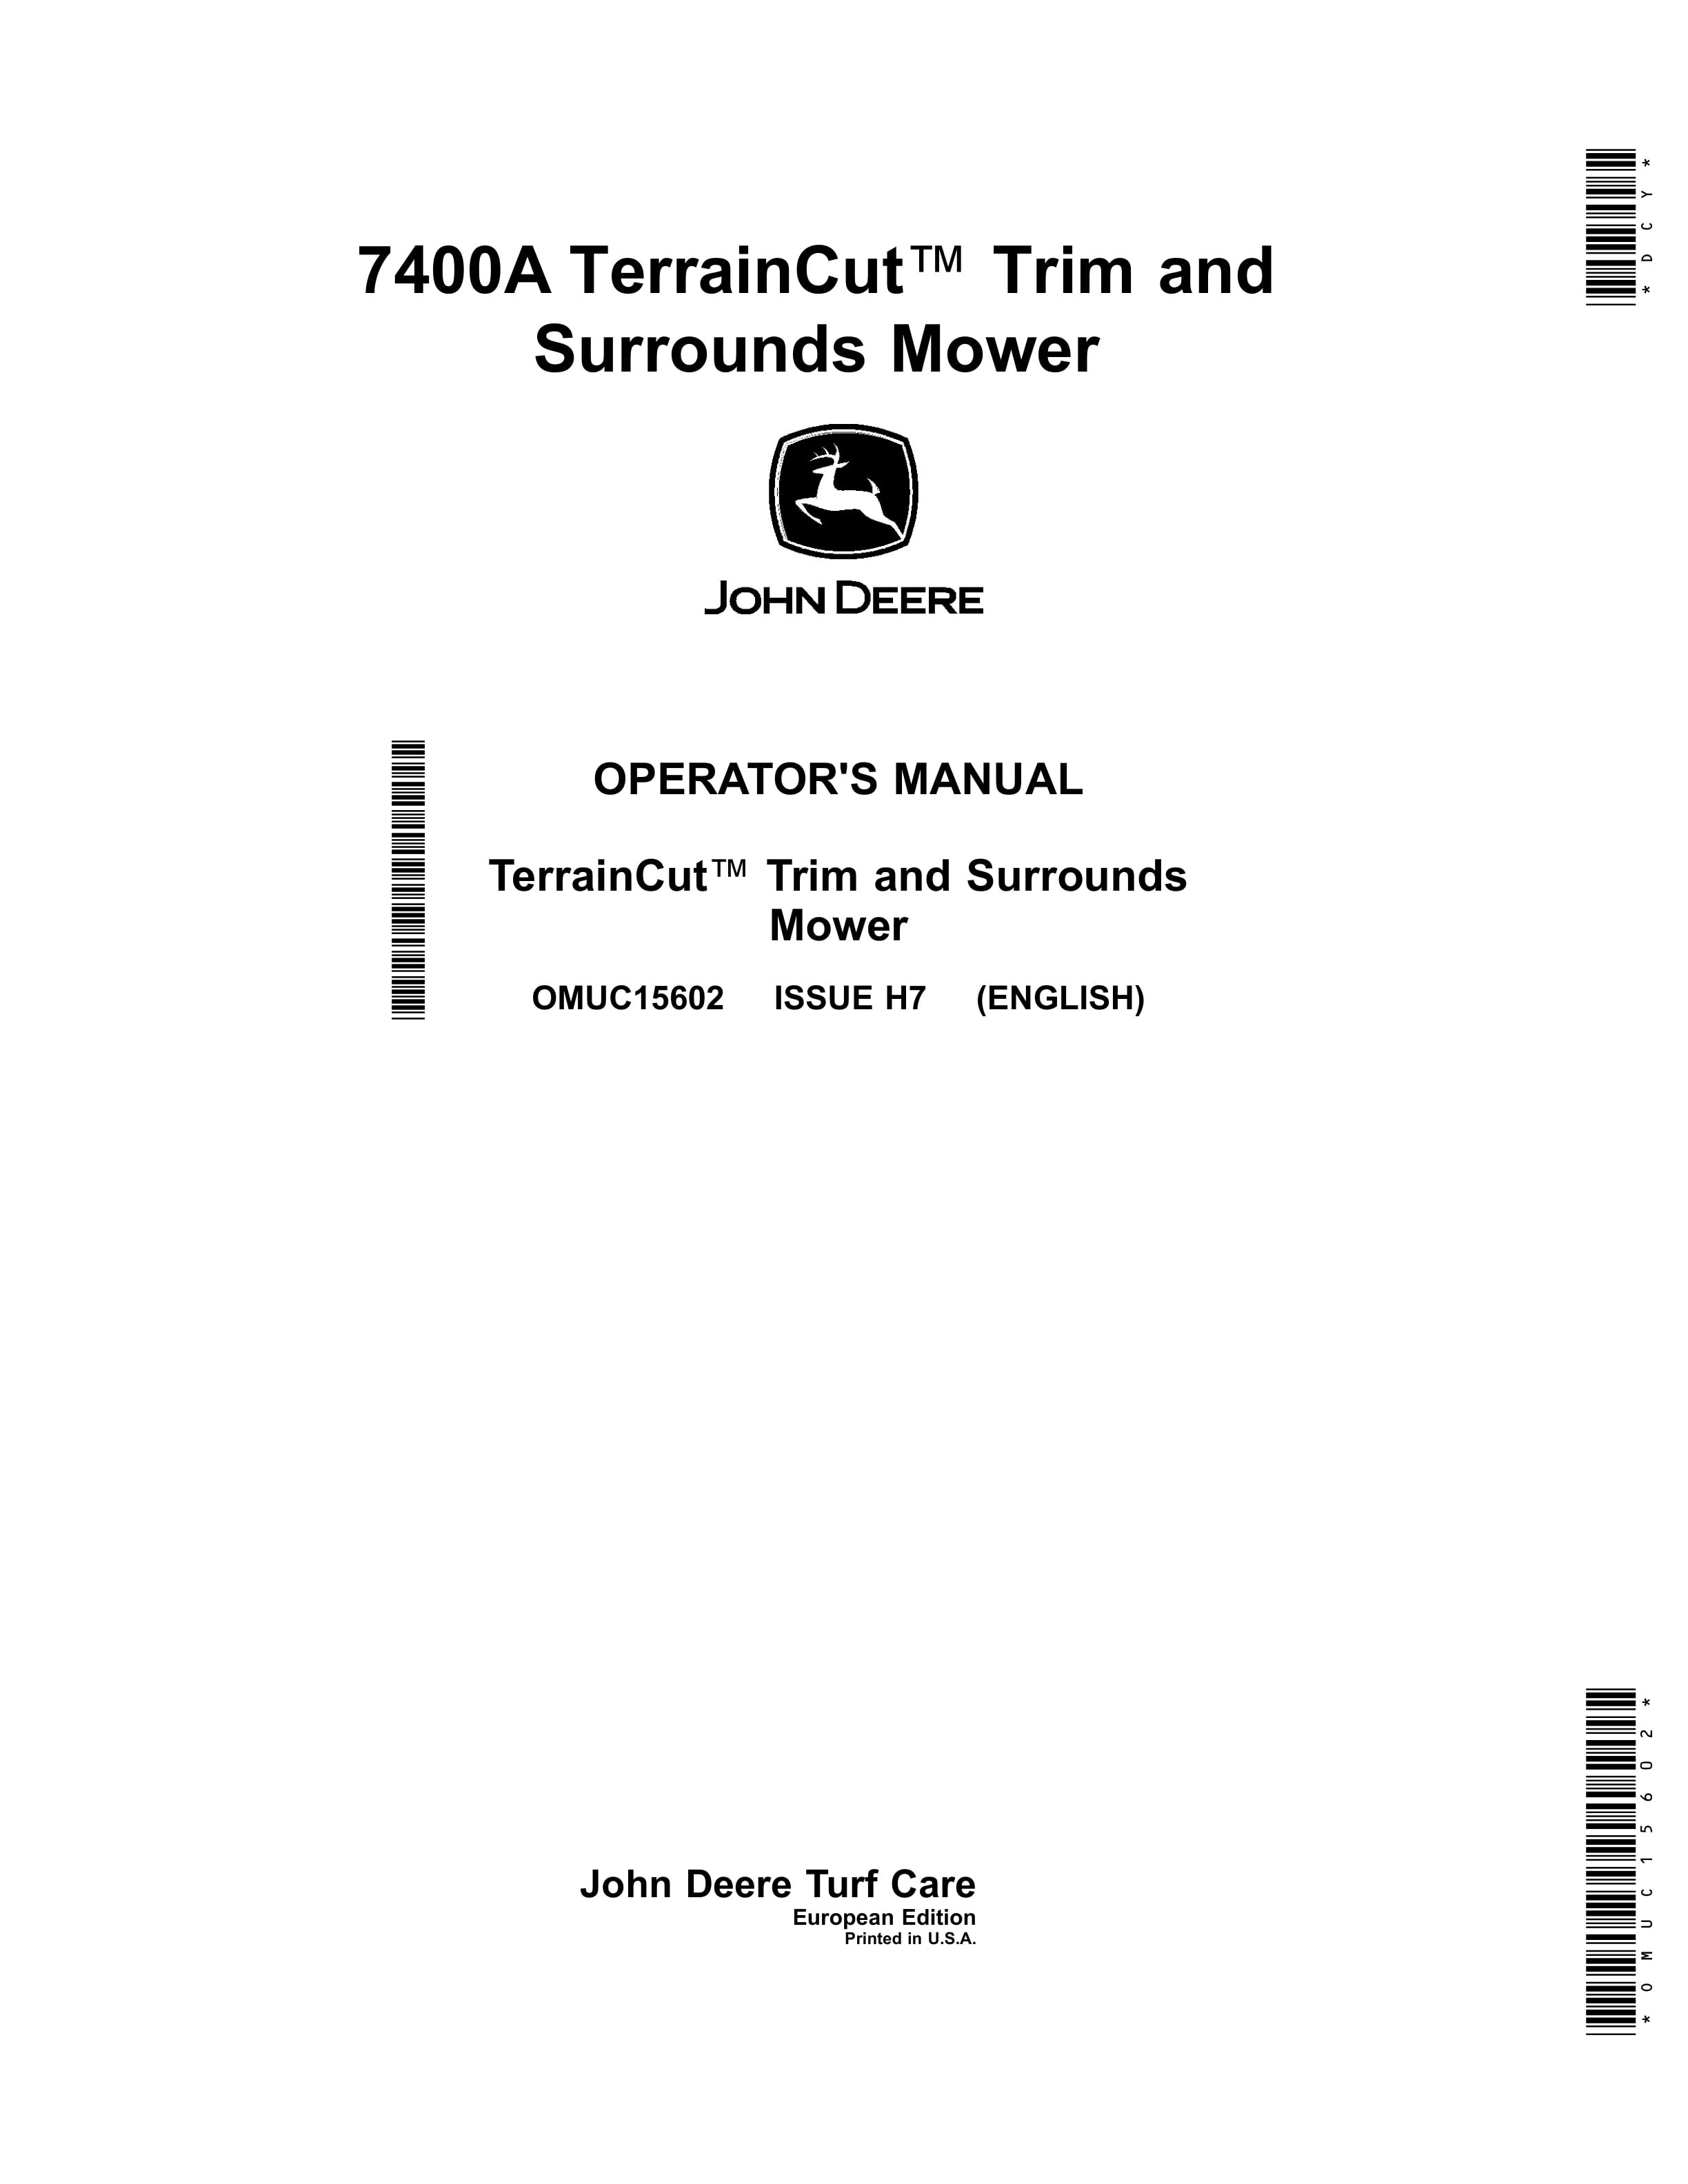 John Deere 7400A TerrainCut Trim and Surrounds Mower Operator Manual OMUC15602 1